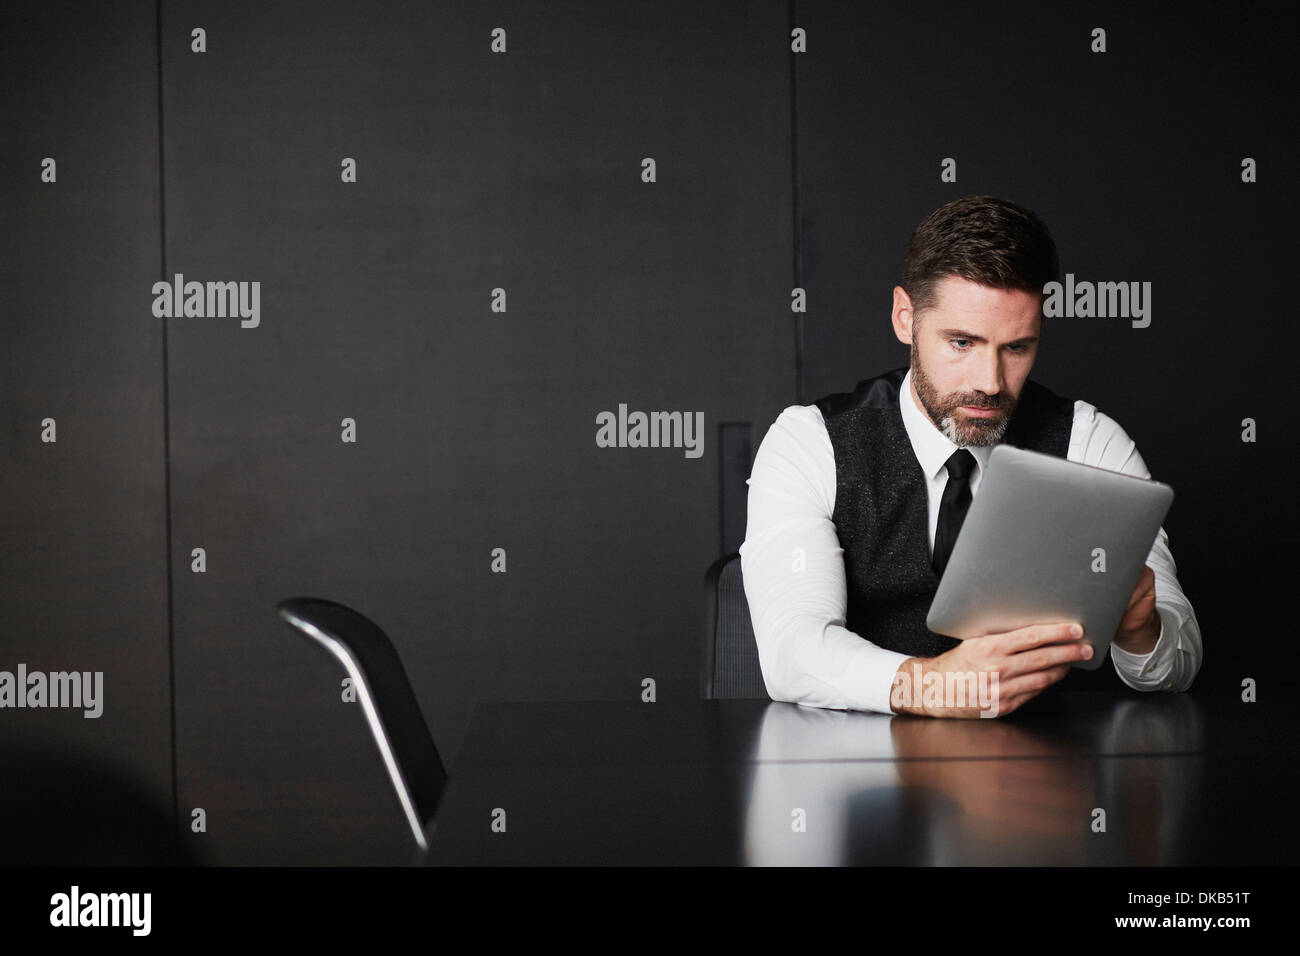 Businessman using digital tablet Banque D'Images